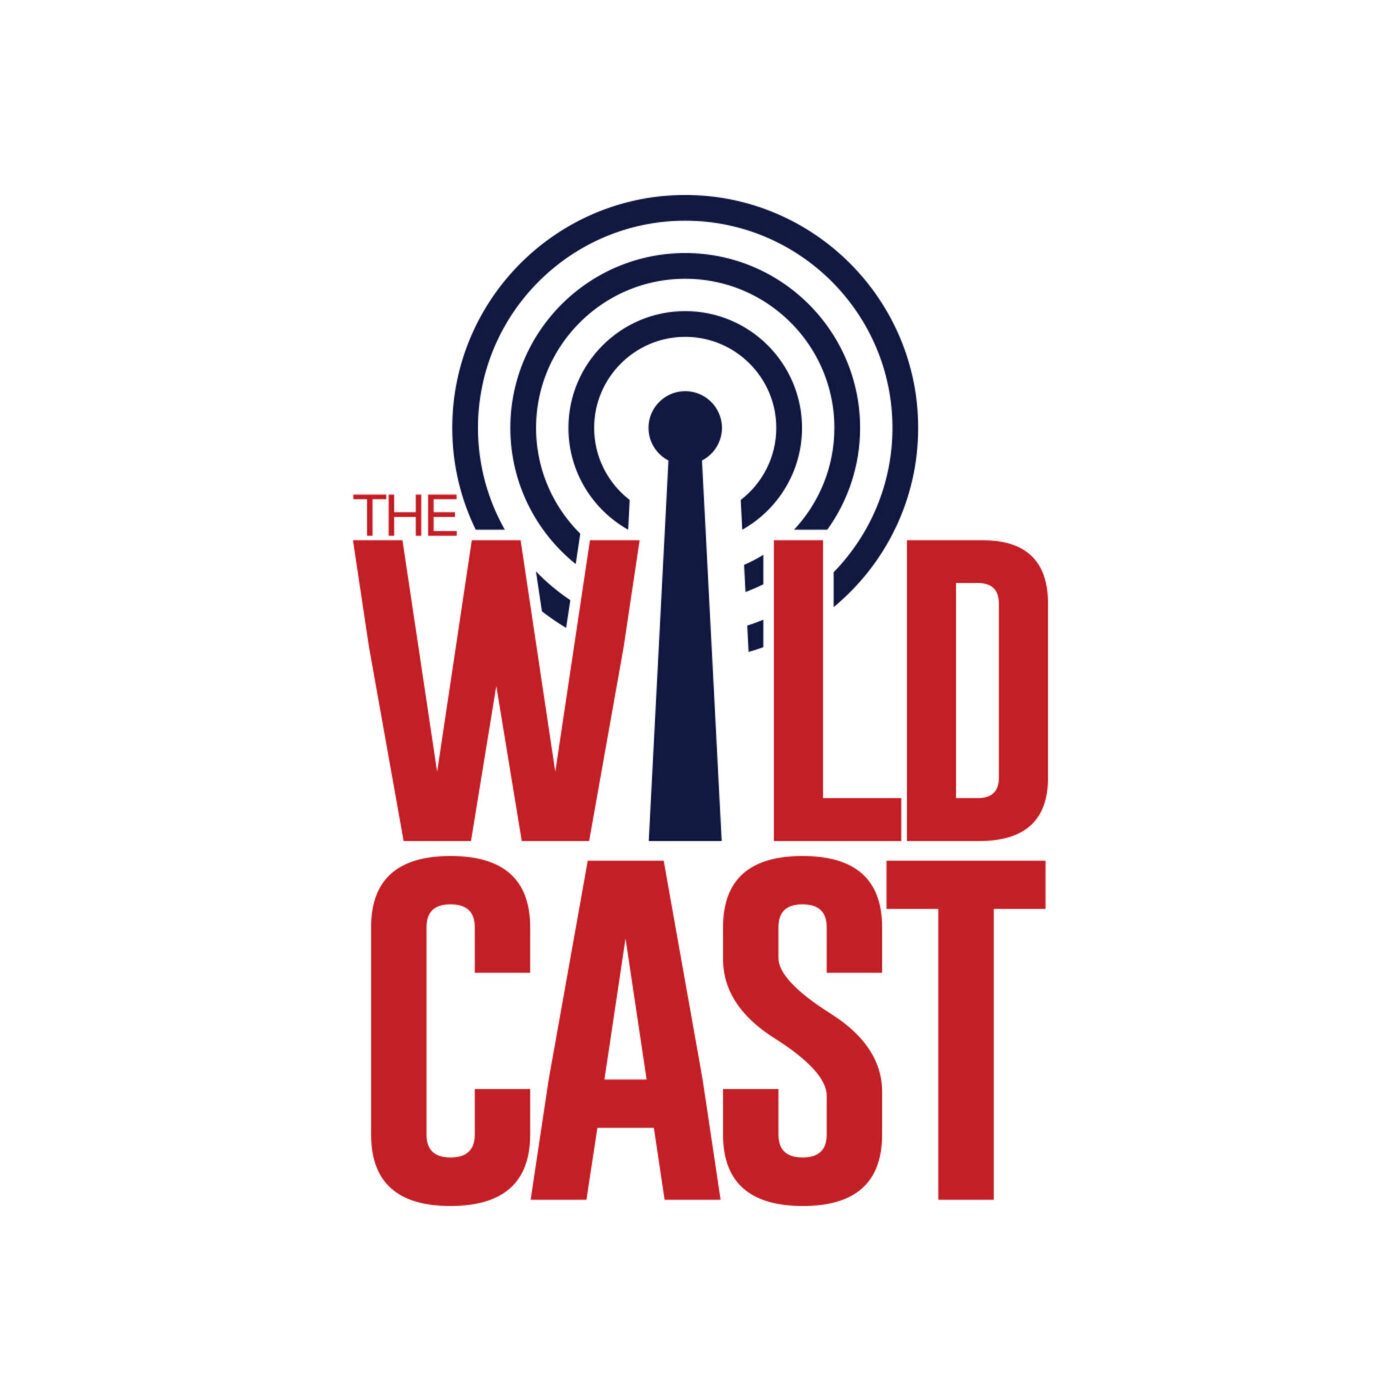 The Wildcast, Episode 406: How can Arizona, Jayden de Laura shake off Wazzu loss ahead of Territorial Cup?